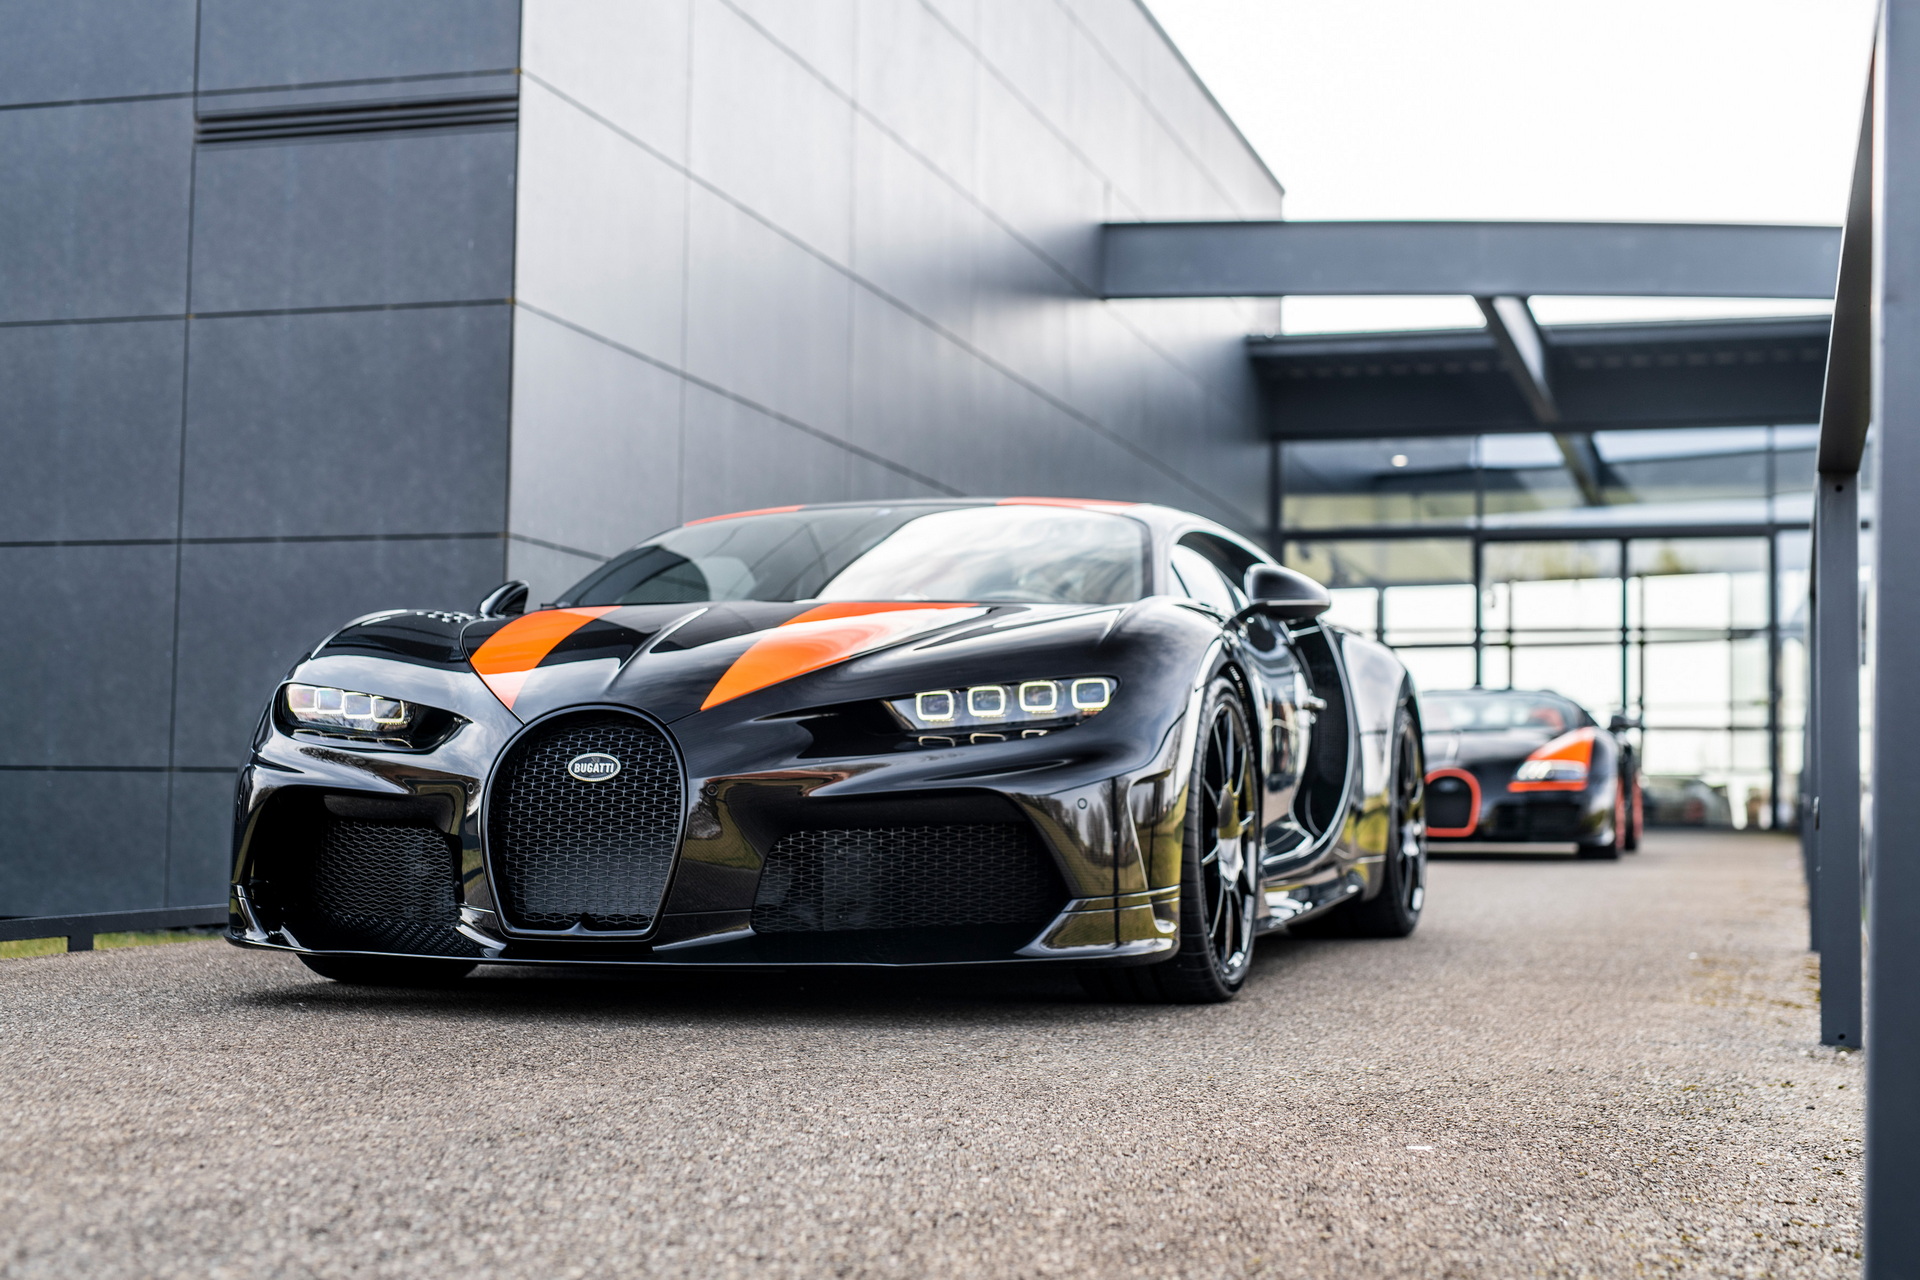 Ghé thăm nhà máy Bugatti, đại gia bí ẩn mua luôn 8 chiếc xe với giá quy đổi không dưới 150 tỷ đồng - Ảnh 2.